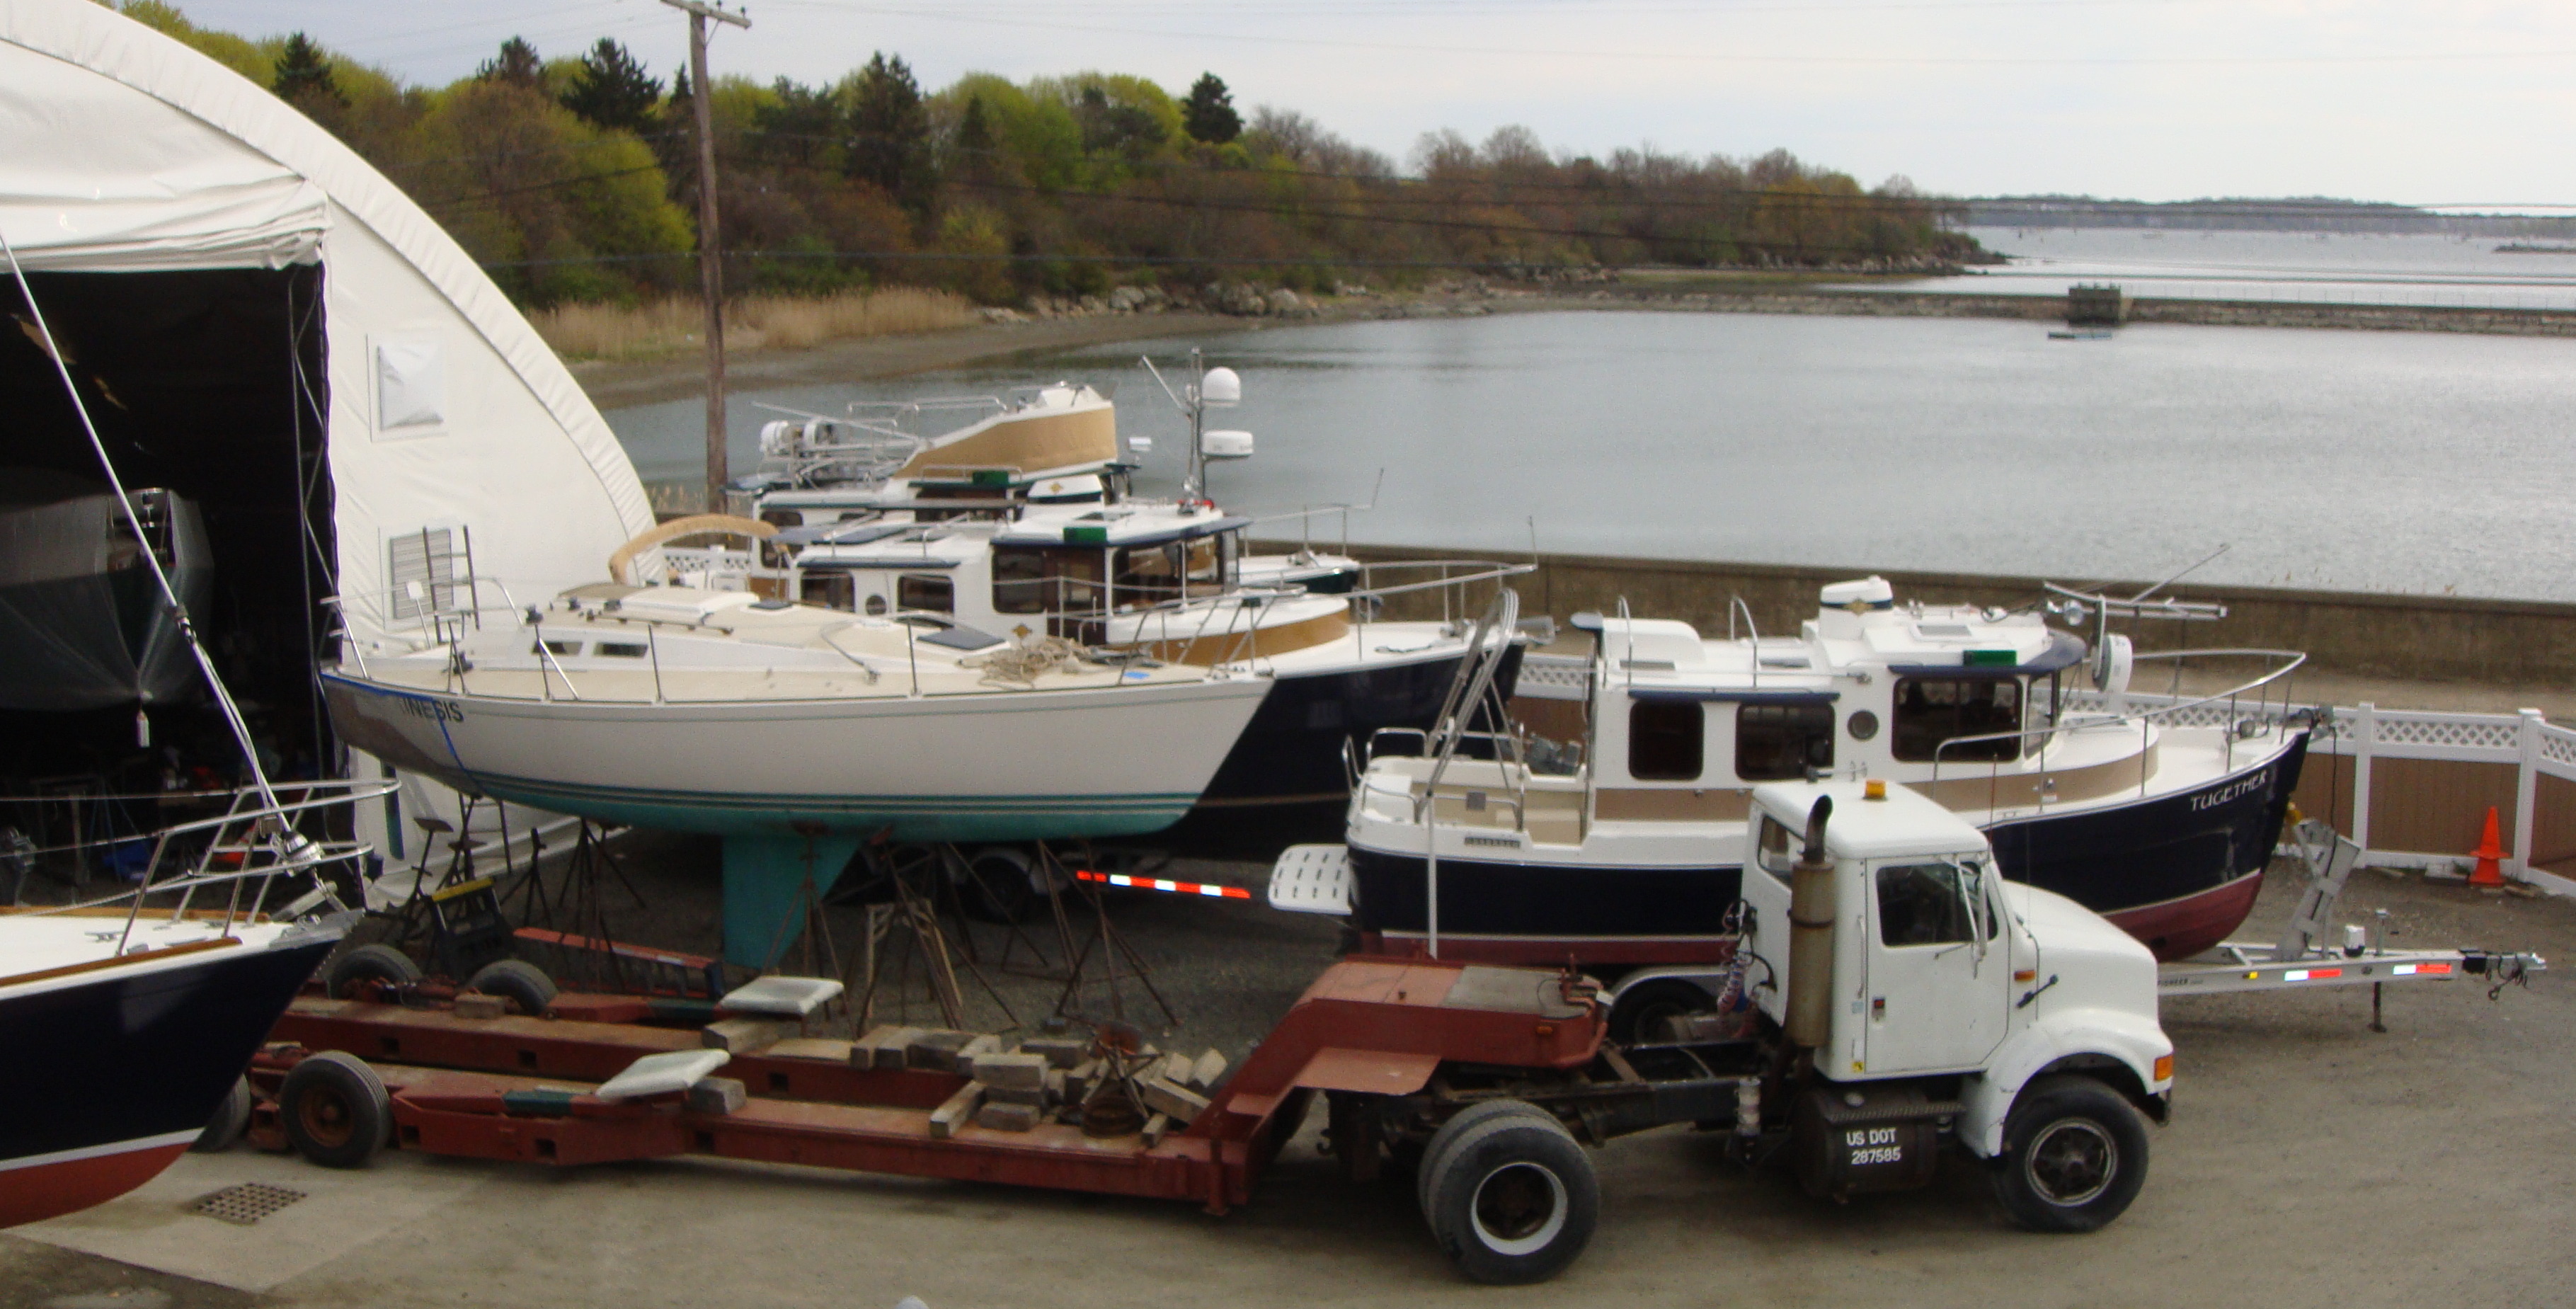 Winter Island Yacht Yard, a Full-Service Boat Yard